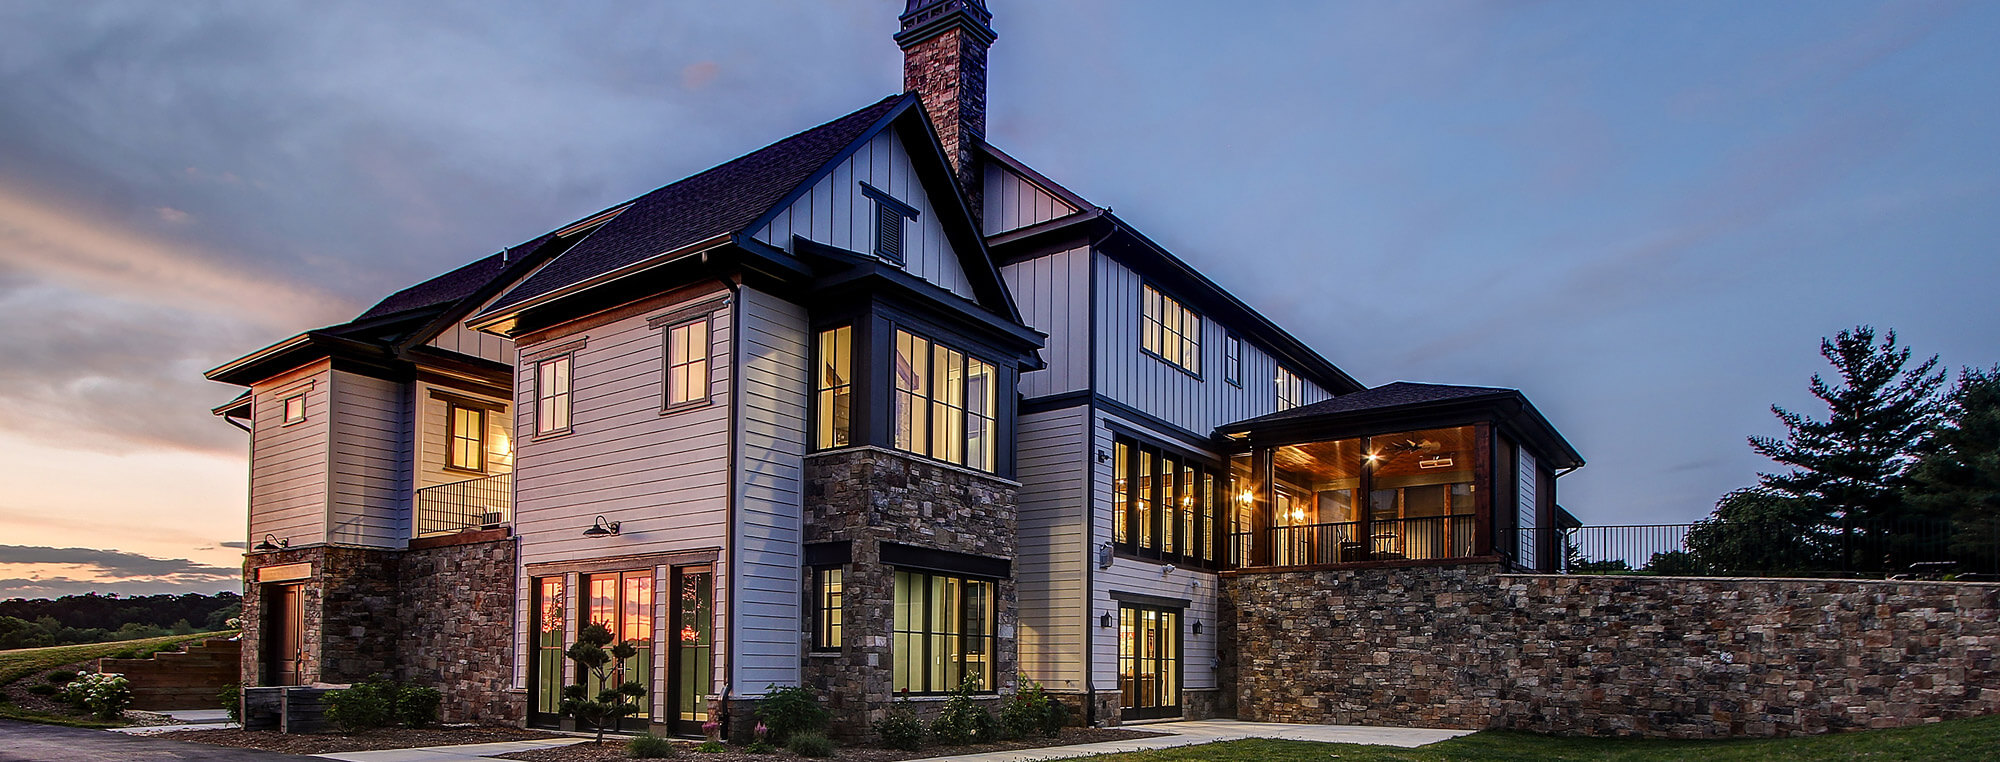 Rear, side Elevation of Clarkssburg Modern Farmhouse-2020 Award Winning Home